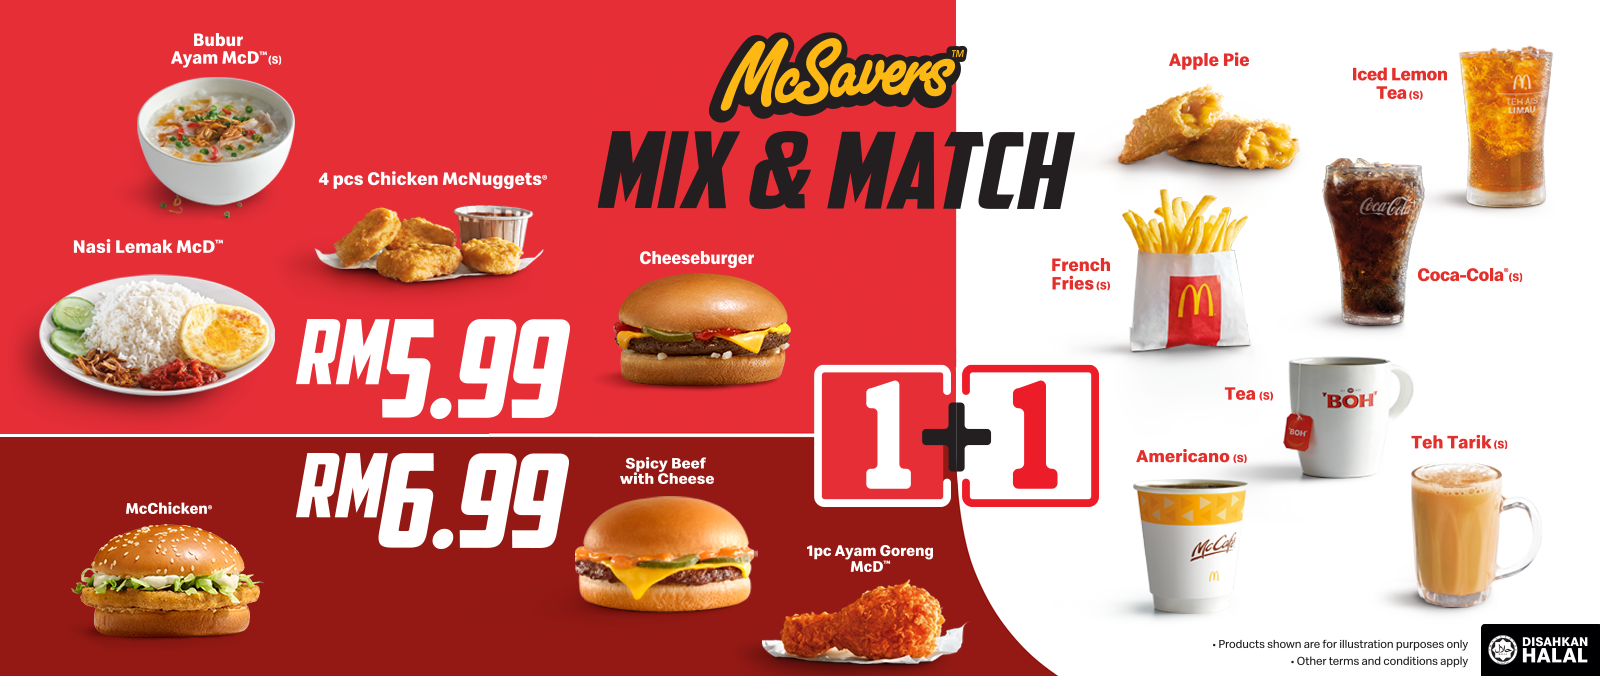 McDonald's Malaysia Get McSavers Mix & Match For Just RM5.99